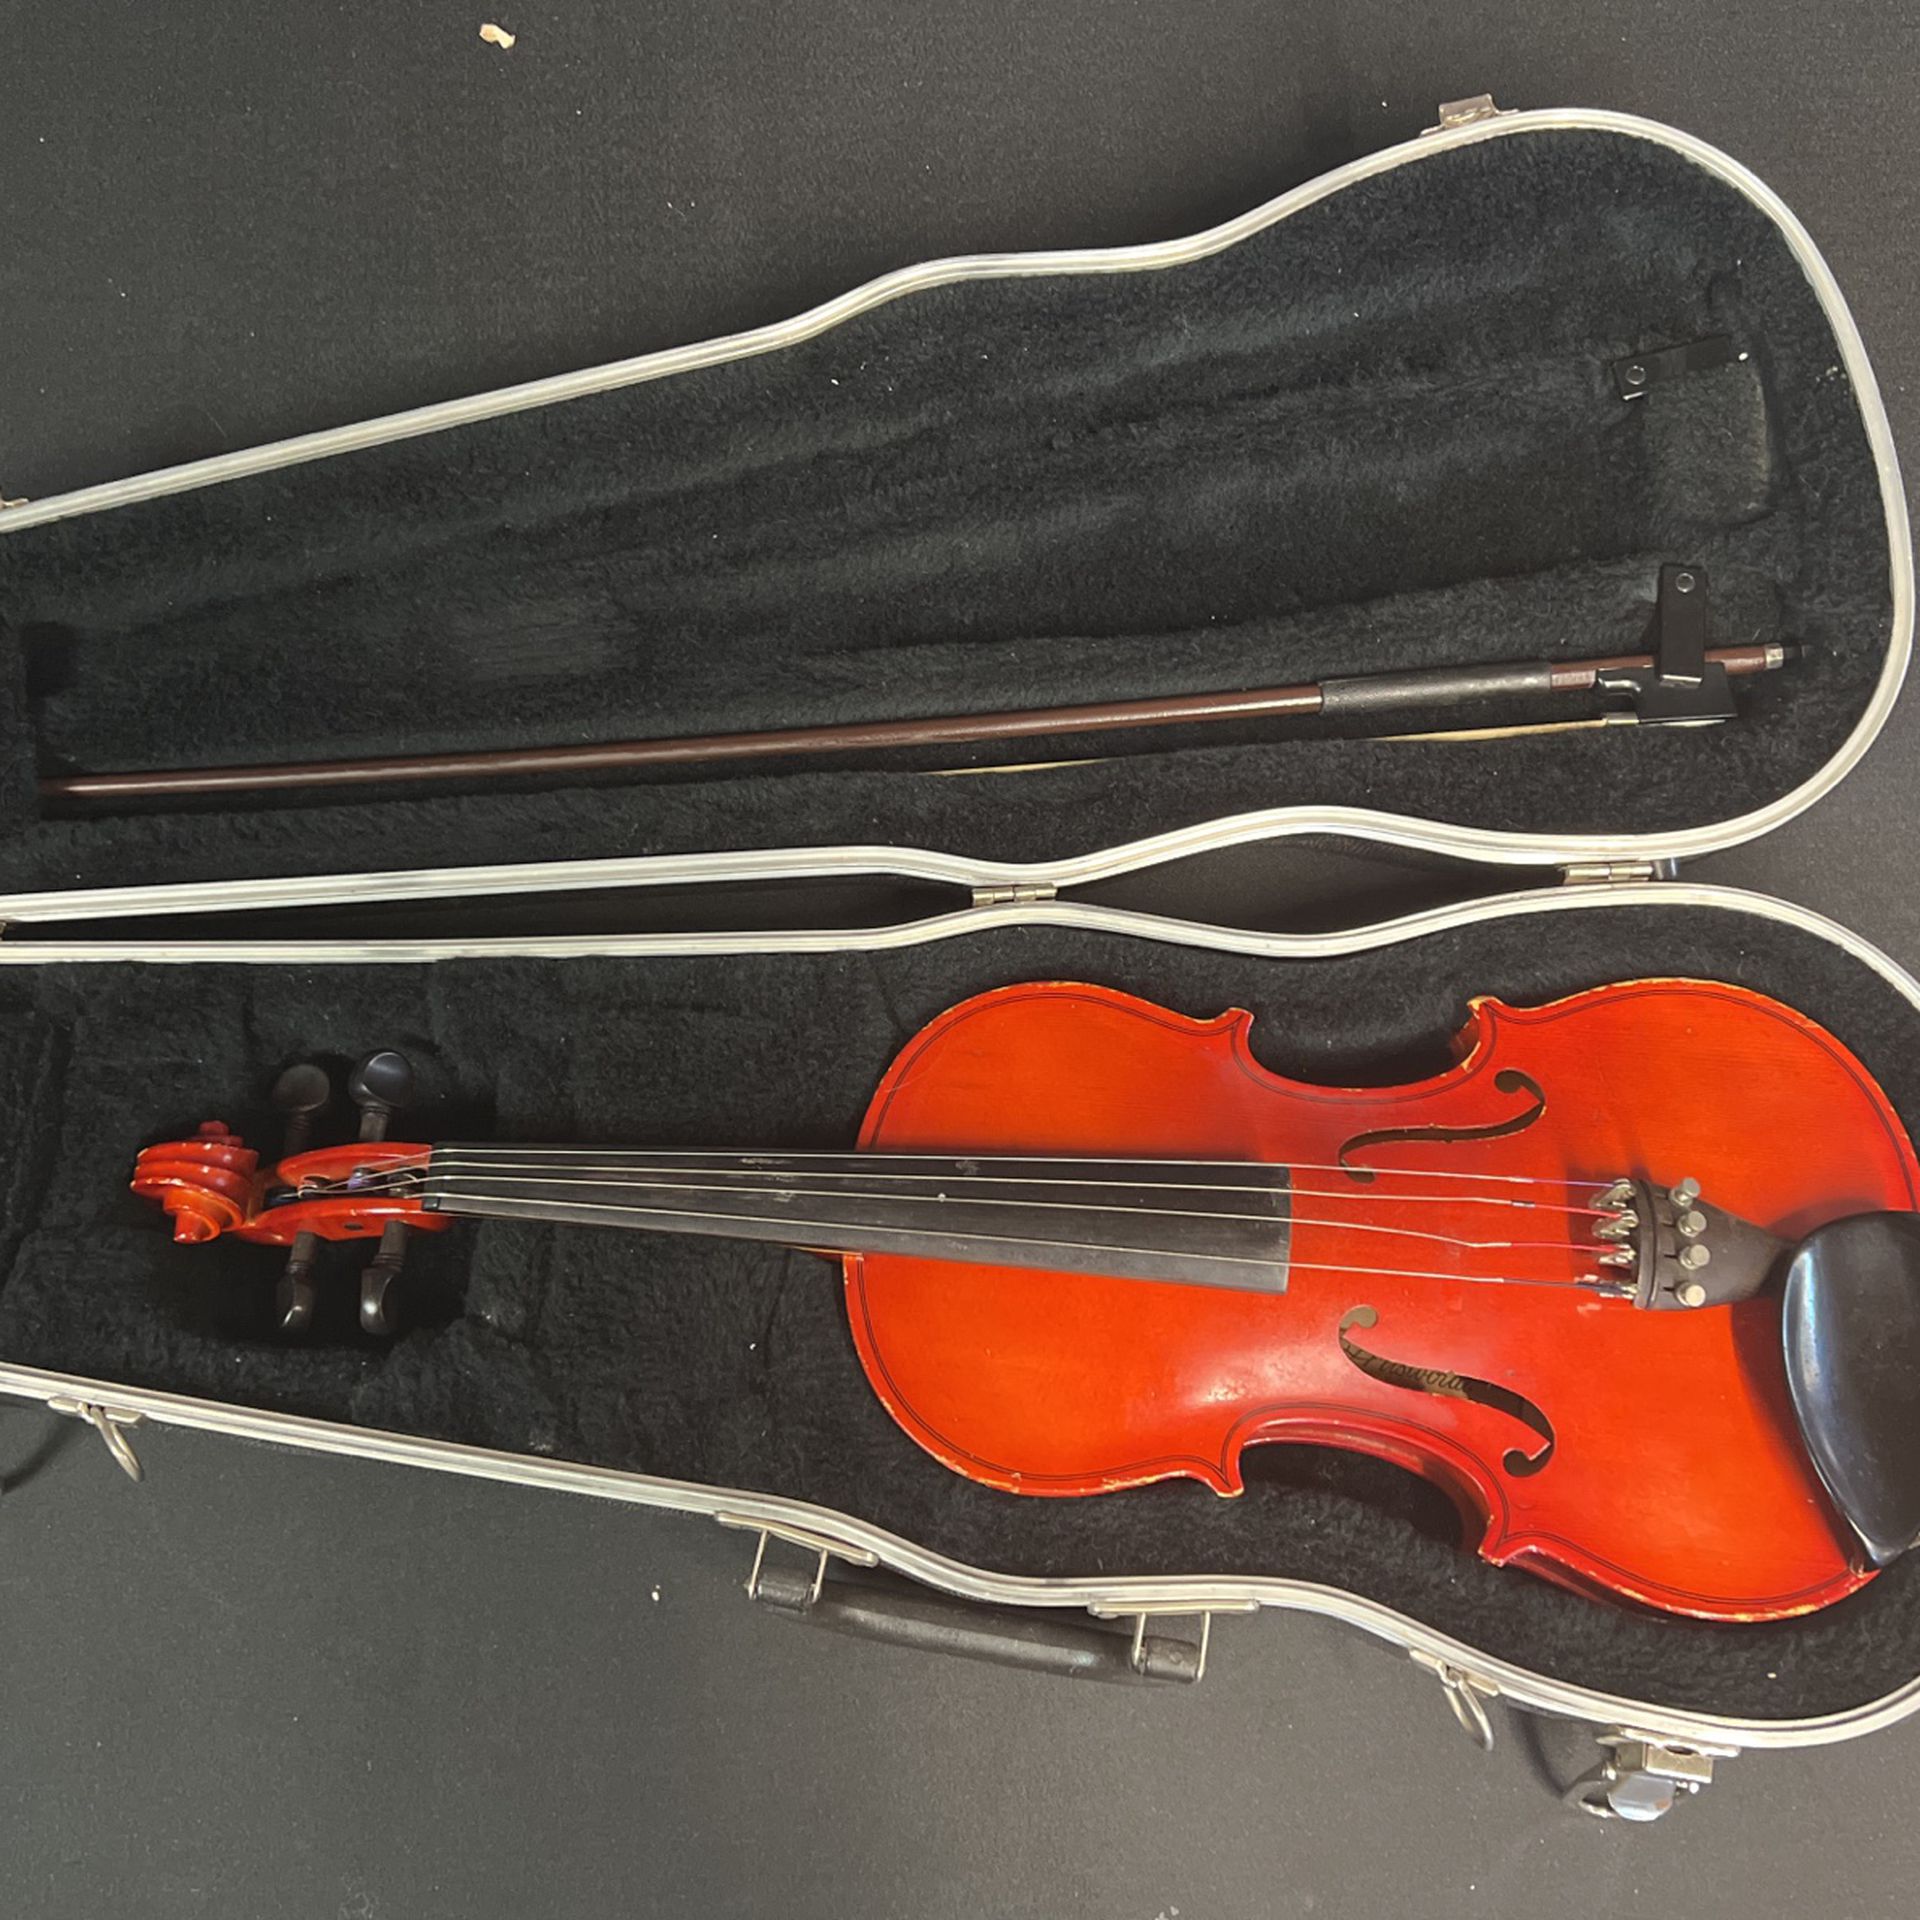 Cherrywood violin good condition